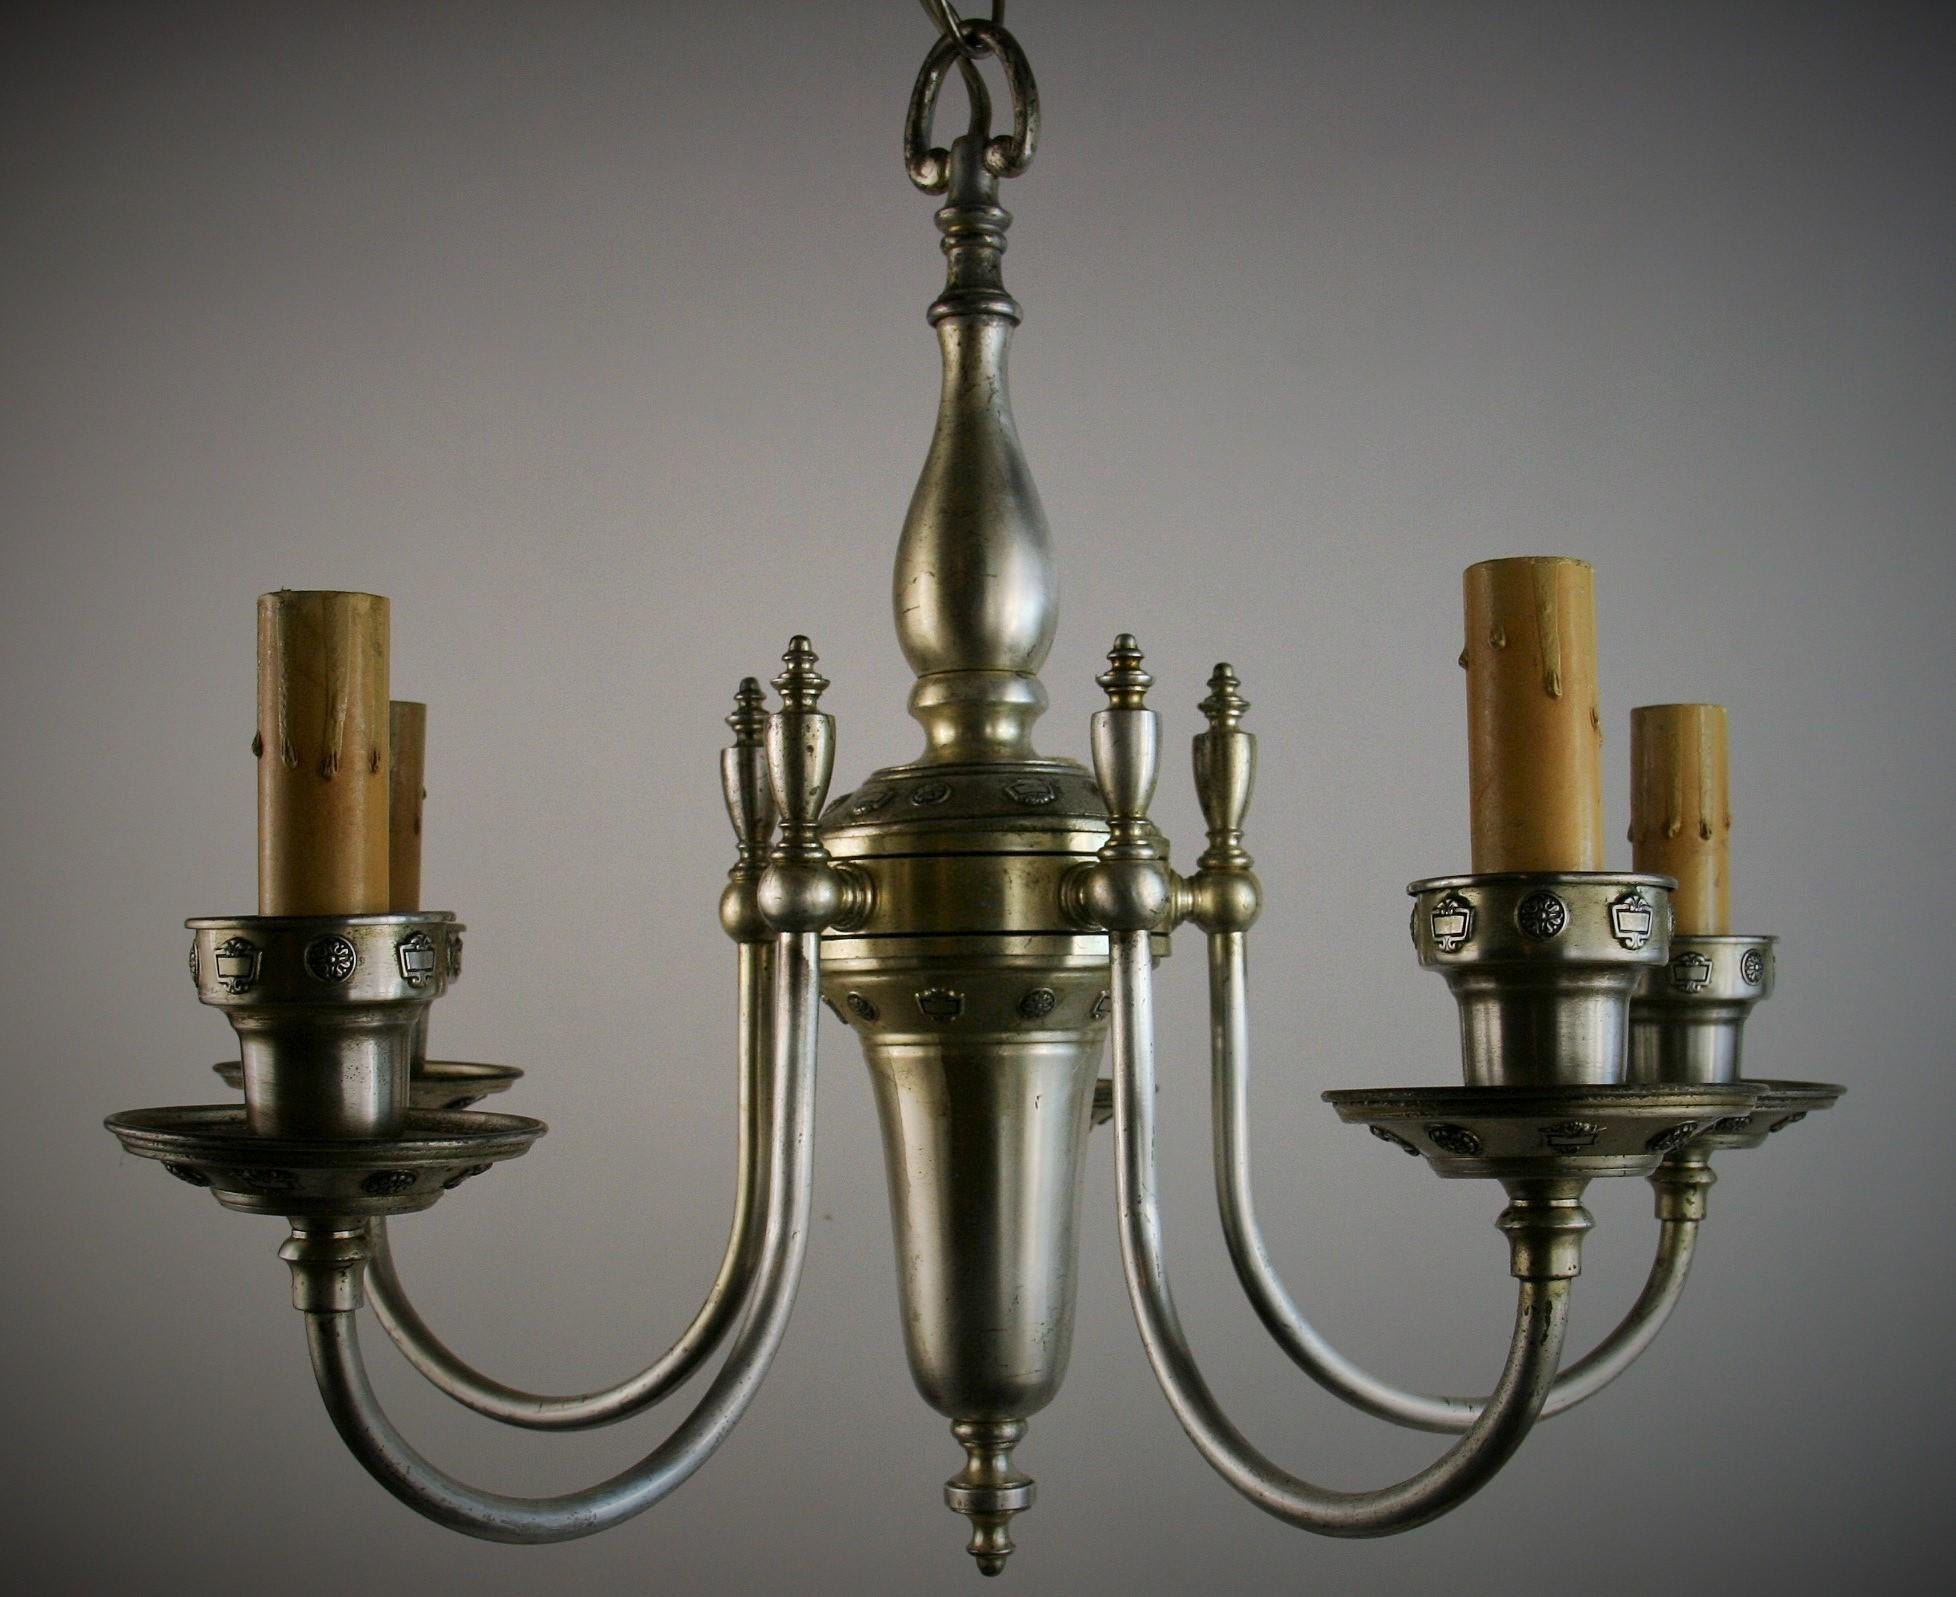 1594  Lustre anglais en laiton argenté à 5 lumières circa 1920
Rewired 
Ampoules à base de candélabre de 60 watts max.